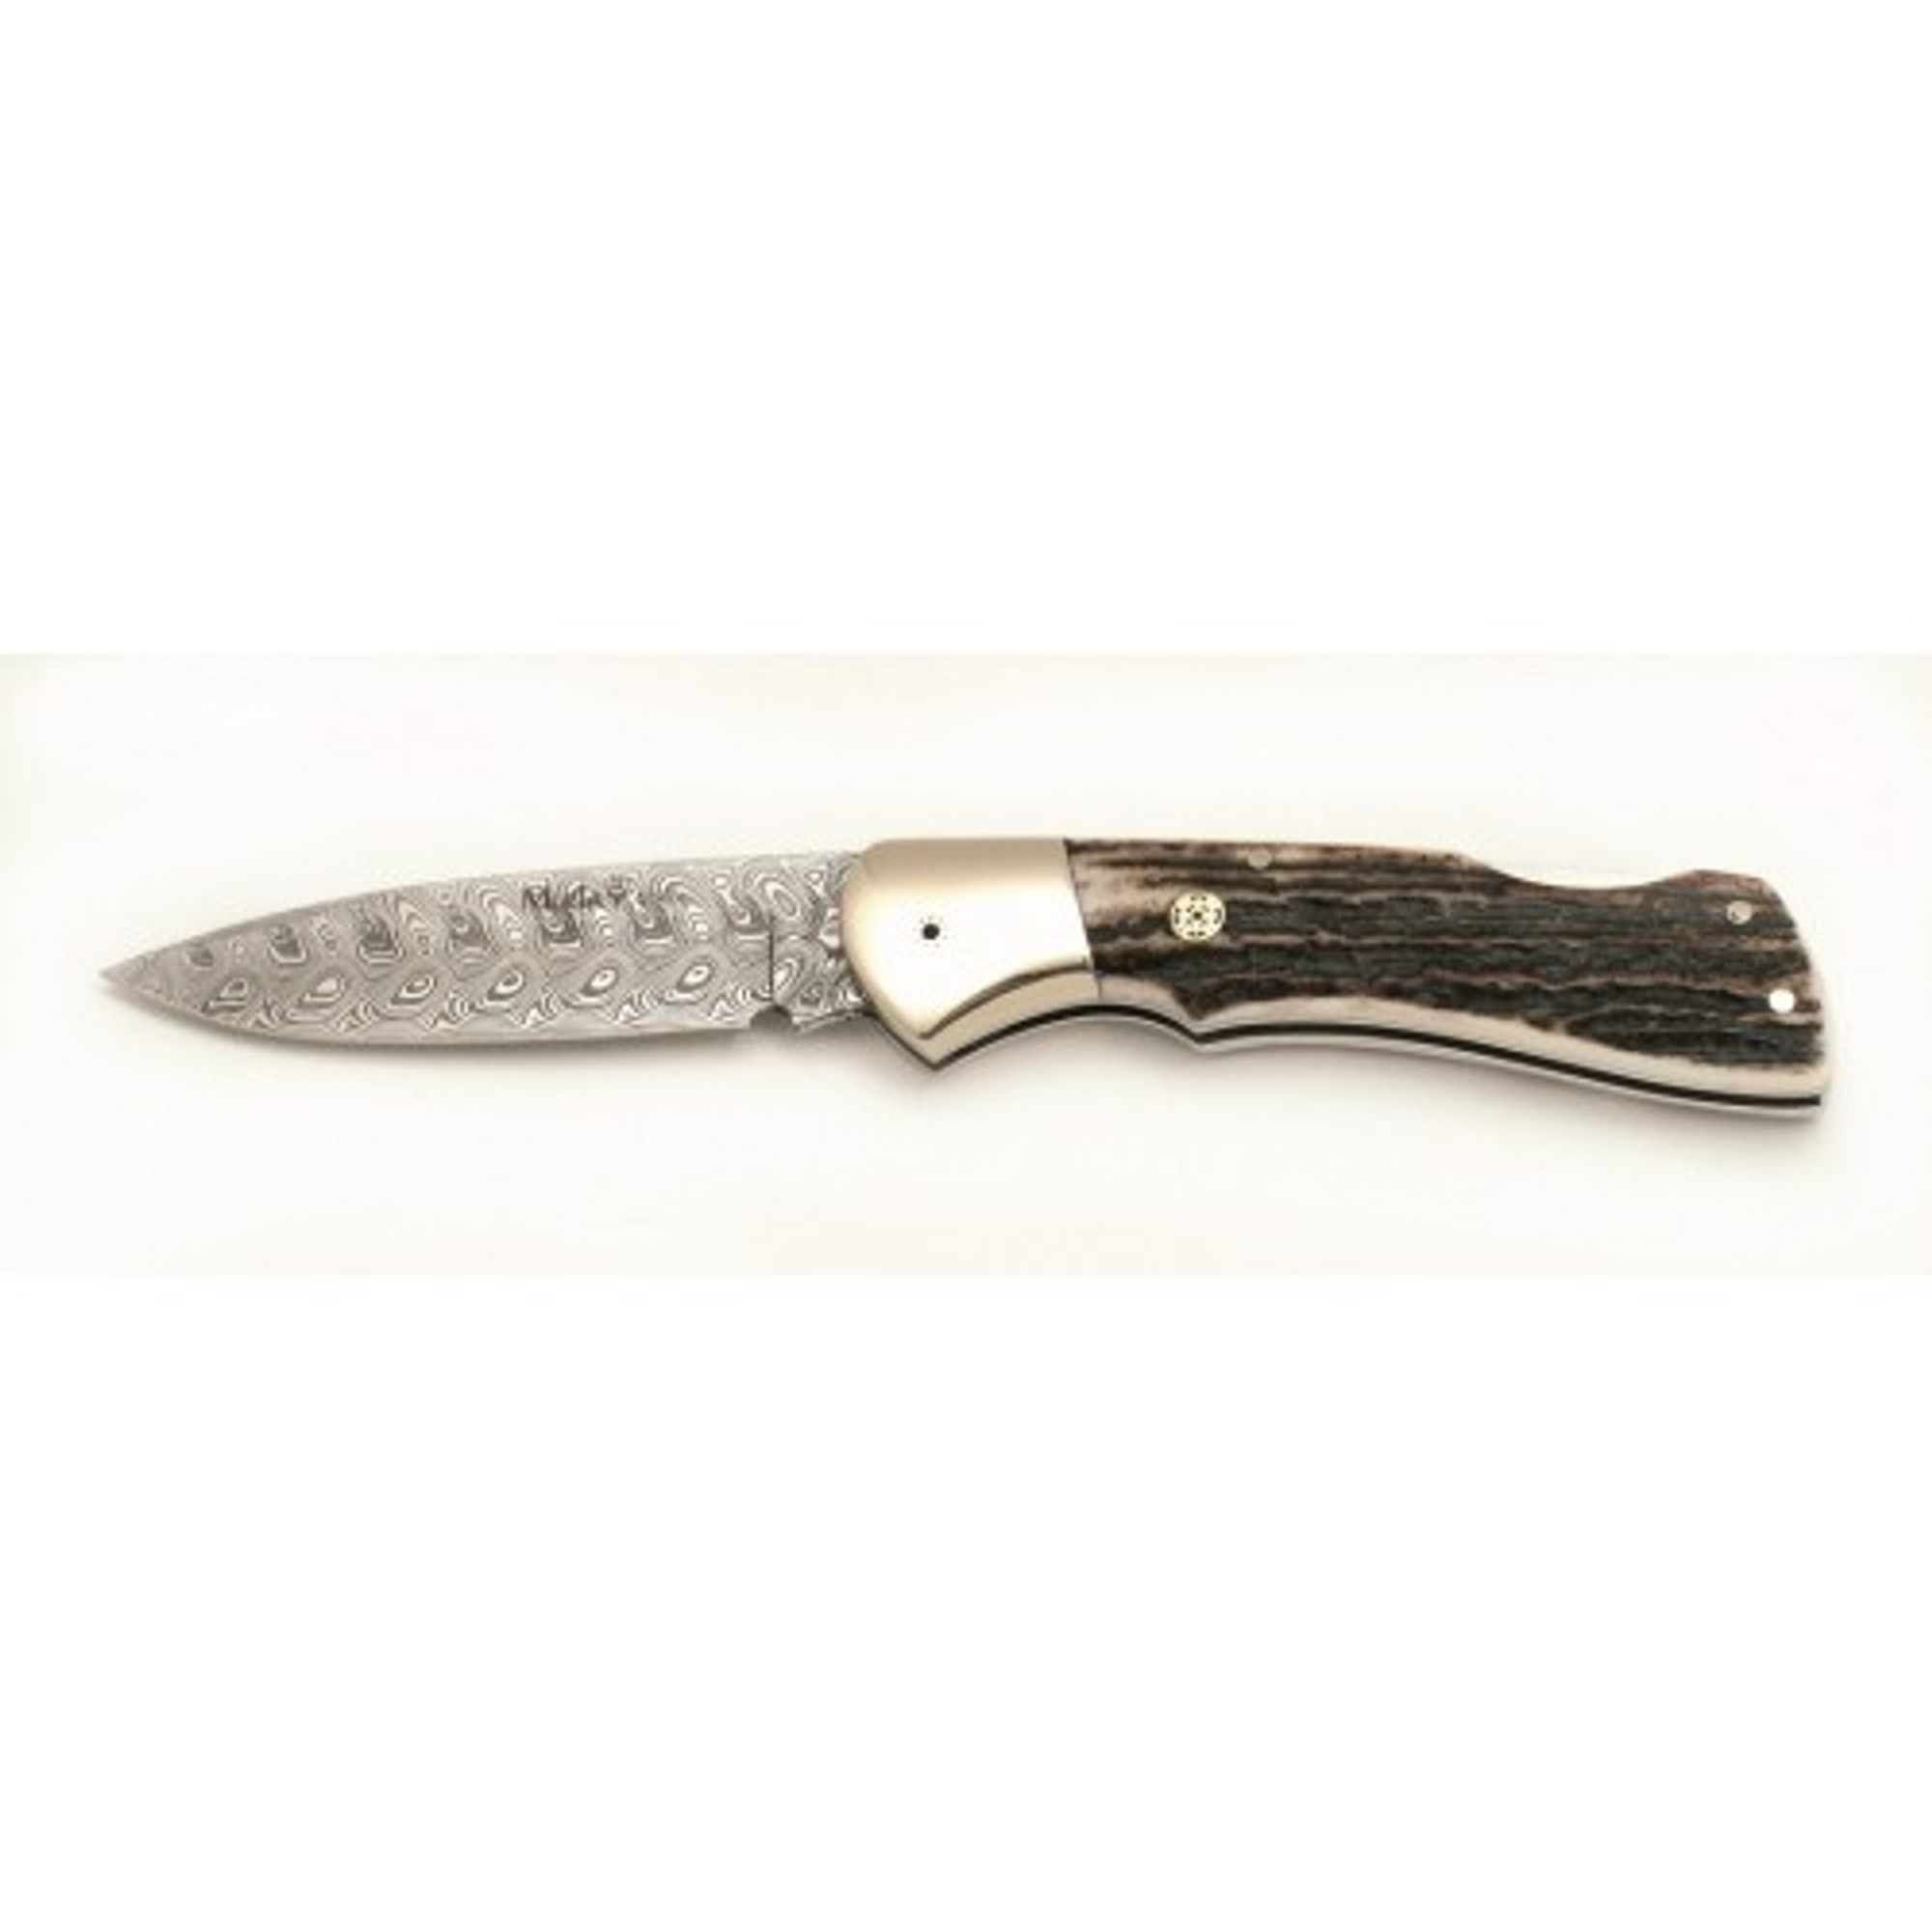 MUELA BX-8A-DAM, Damascus, 3-1/2" Folding Blade Knife, Deer Horn Handle